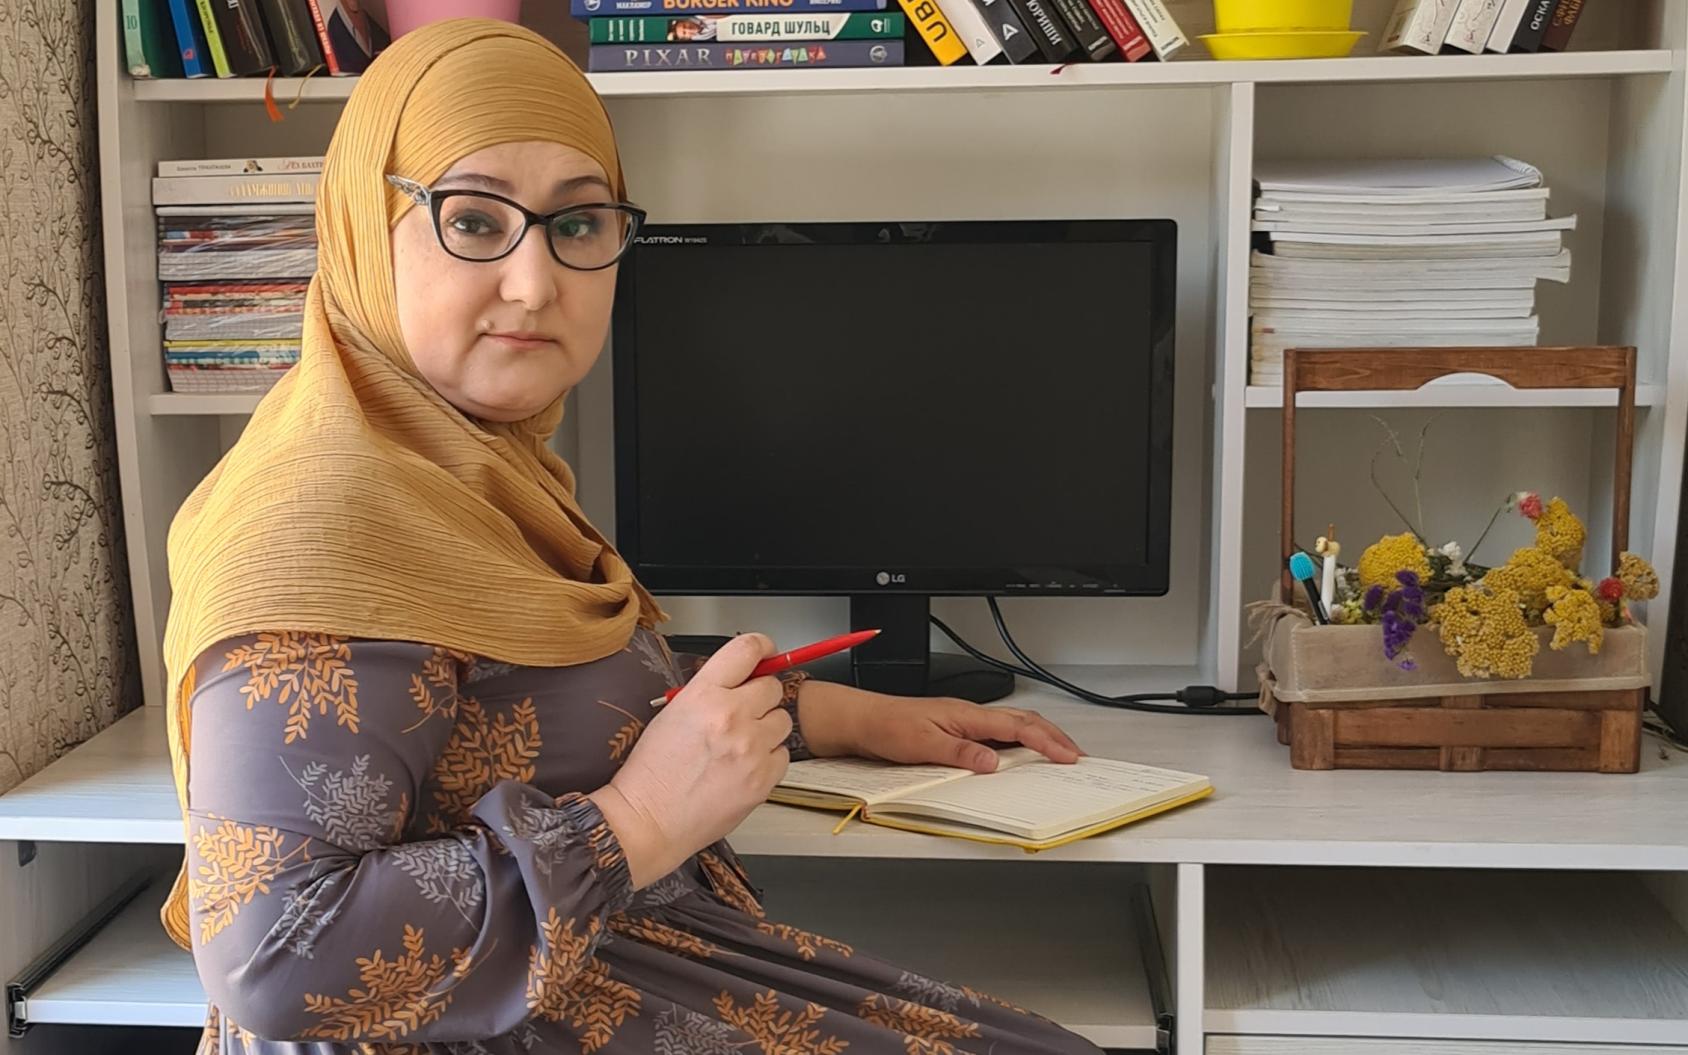 Una mujer, en la oficina de su casa con un ordenador, libros y papeles, escribe en un diario.